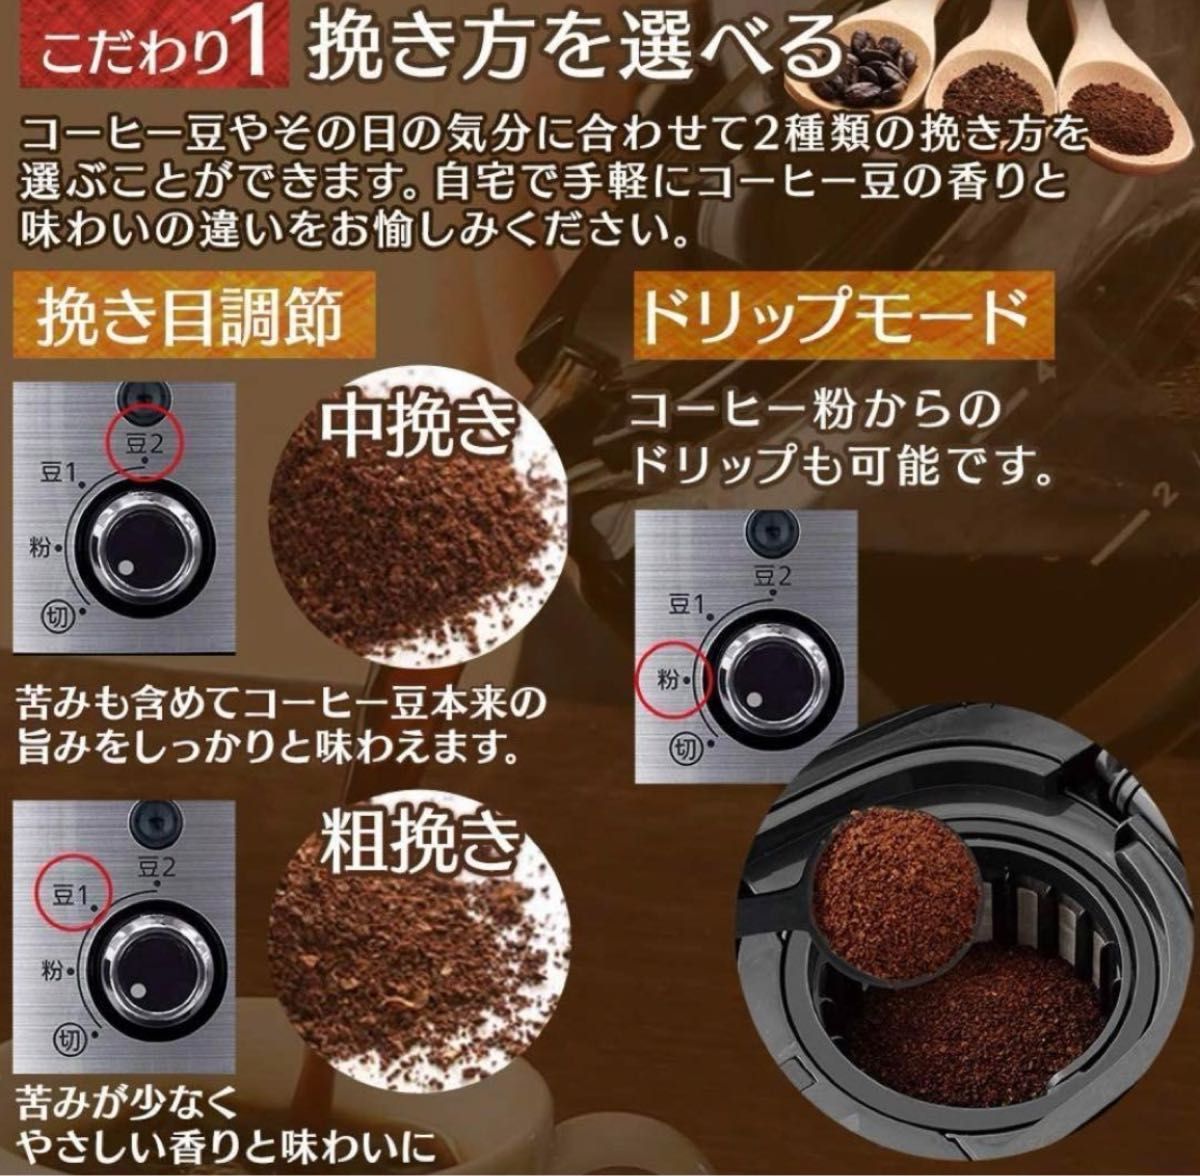 【新品】アイリスオーヤマ 全自動コーヒーメーカー  BLIAC-A600-B